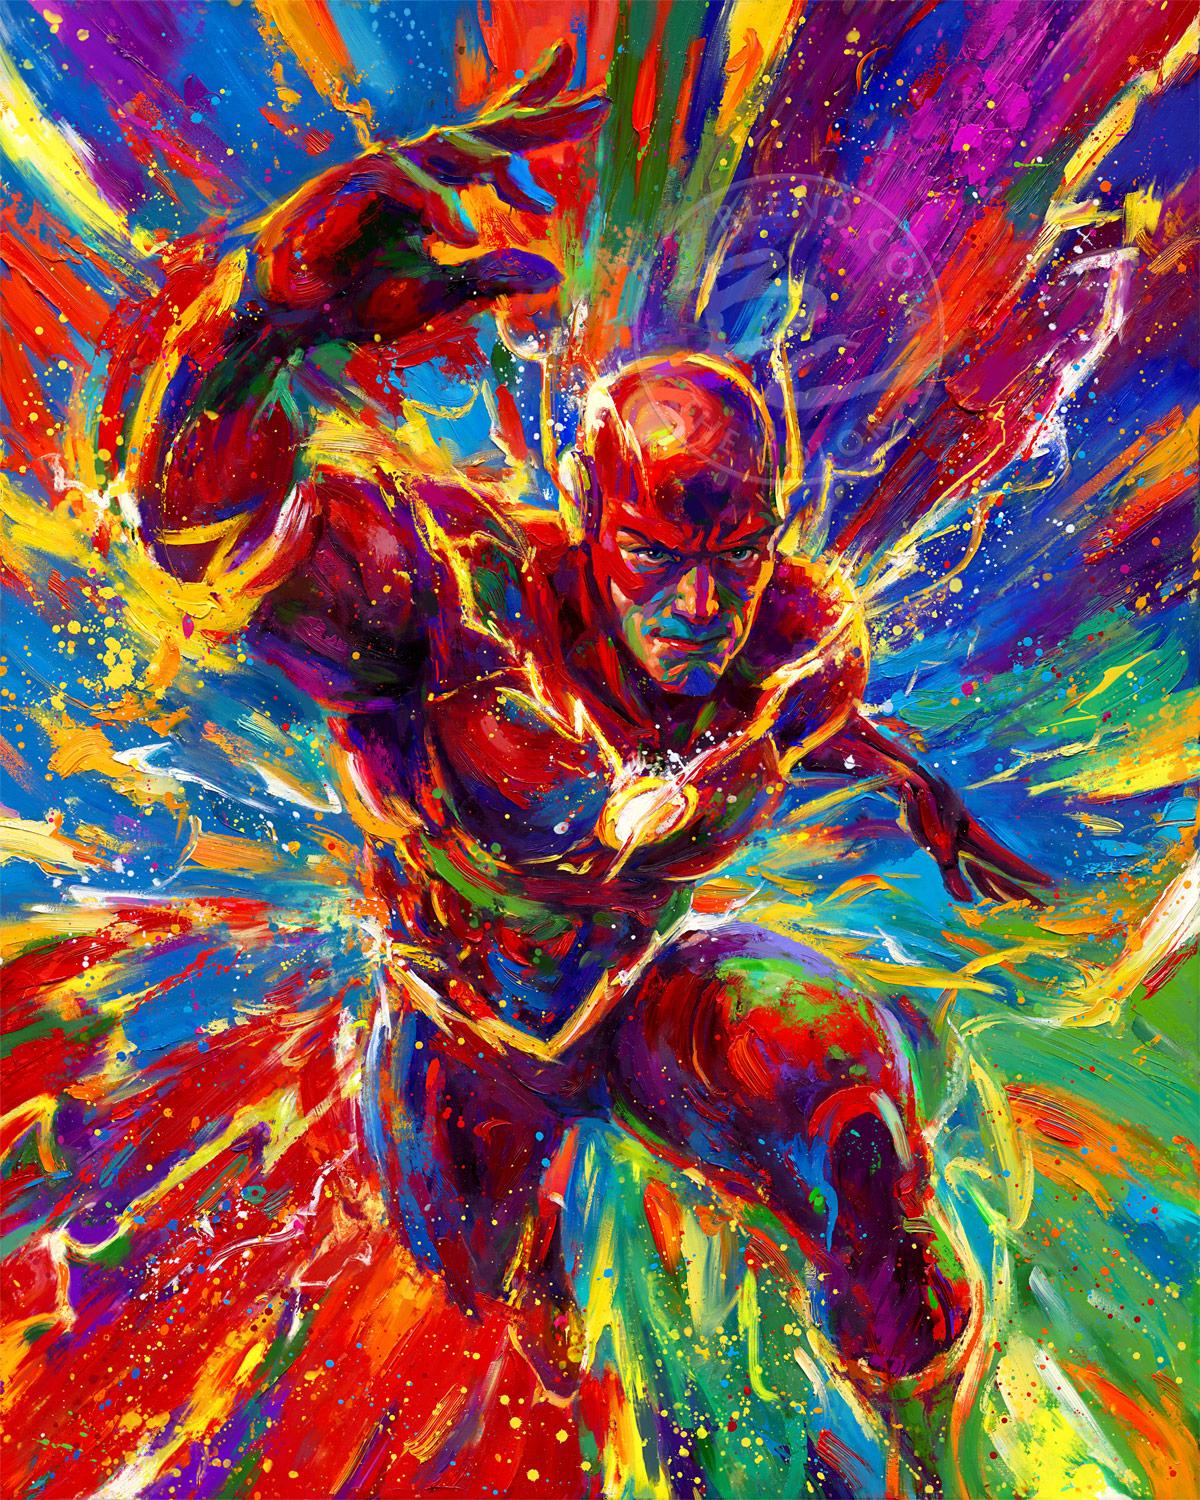 The Flash – Gemälde in Öl auf Leinwand – von Blend Cota